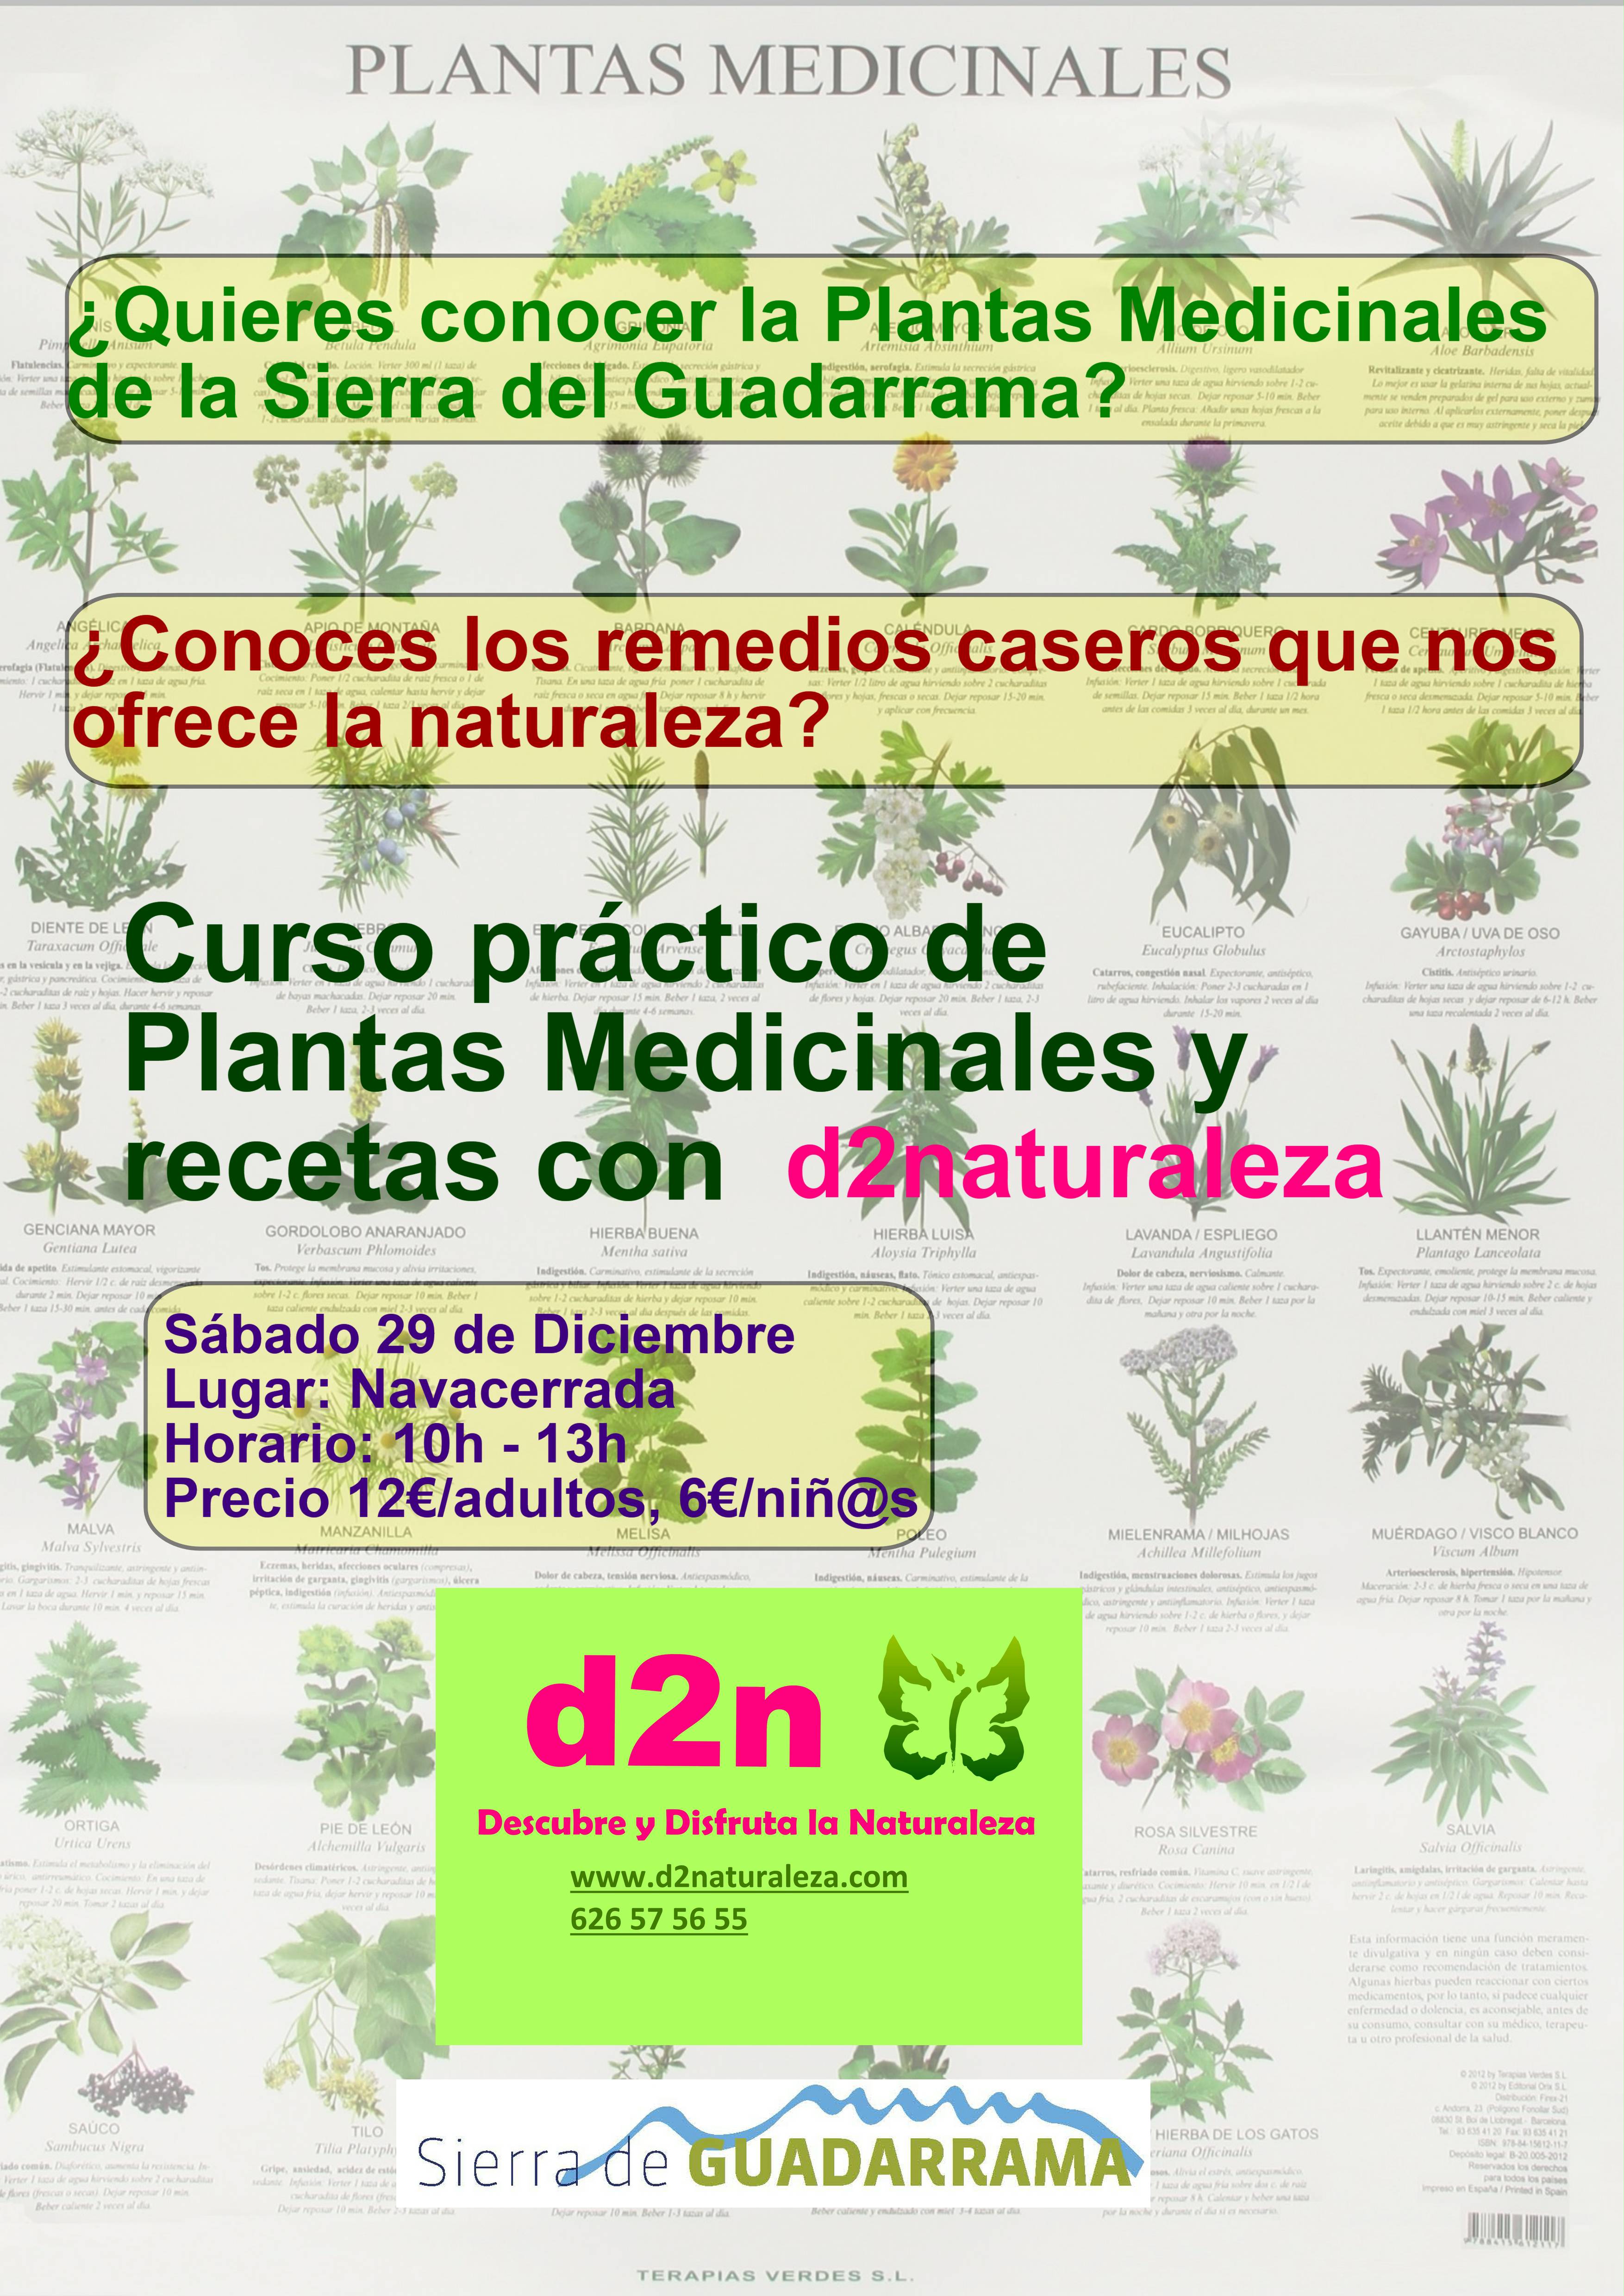 Plantas medicinales.jpg